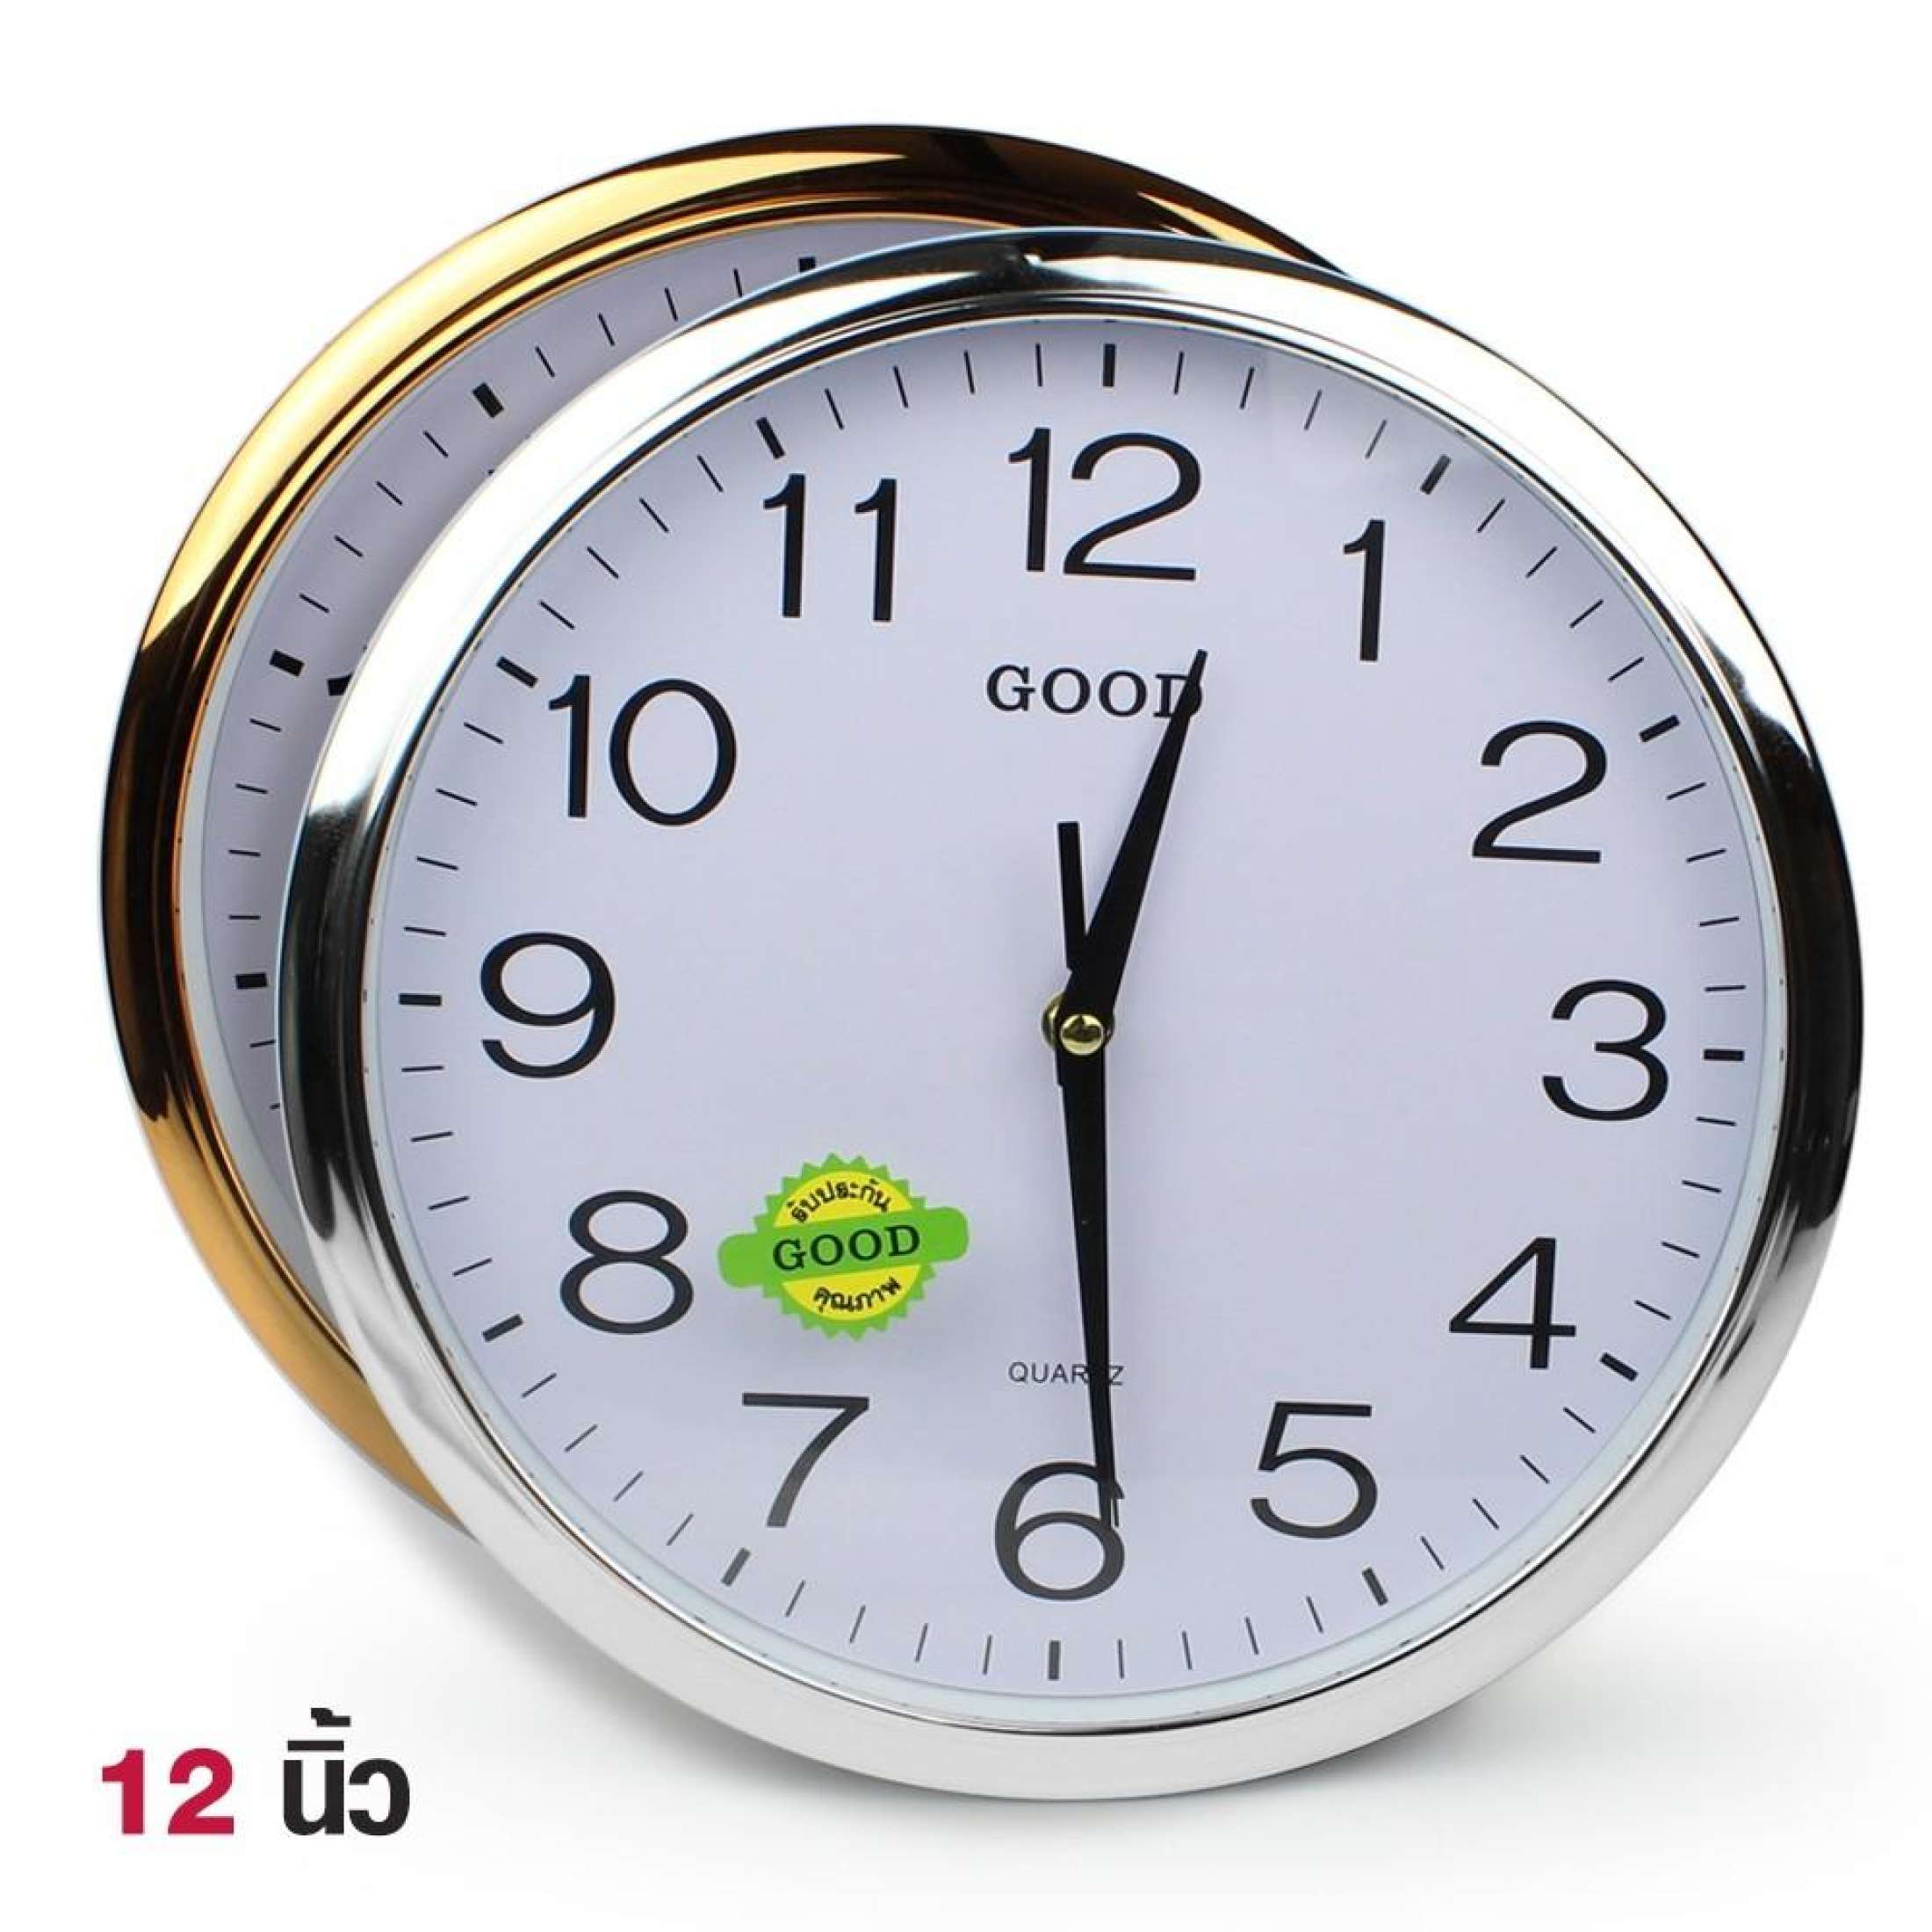 Super seller88 นาฬิกา นาฬิกาแขวน ทรงกลม ขนาด 12 นิ้ว ขอบเงิน ขอบทอง รุ่น Quartz-Clock-231